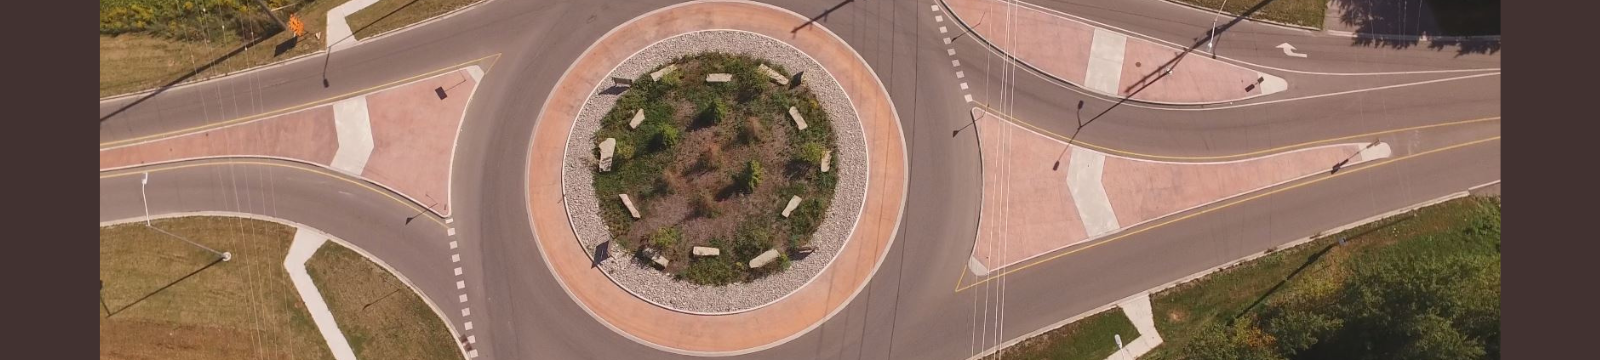 Roundabout in Oshawa